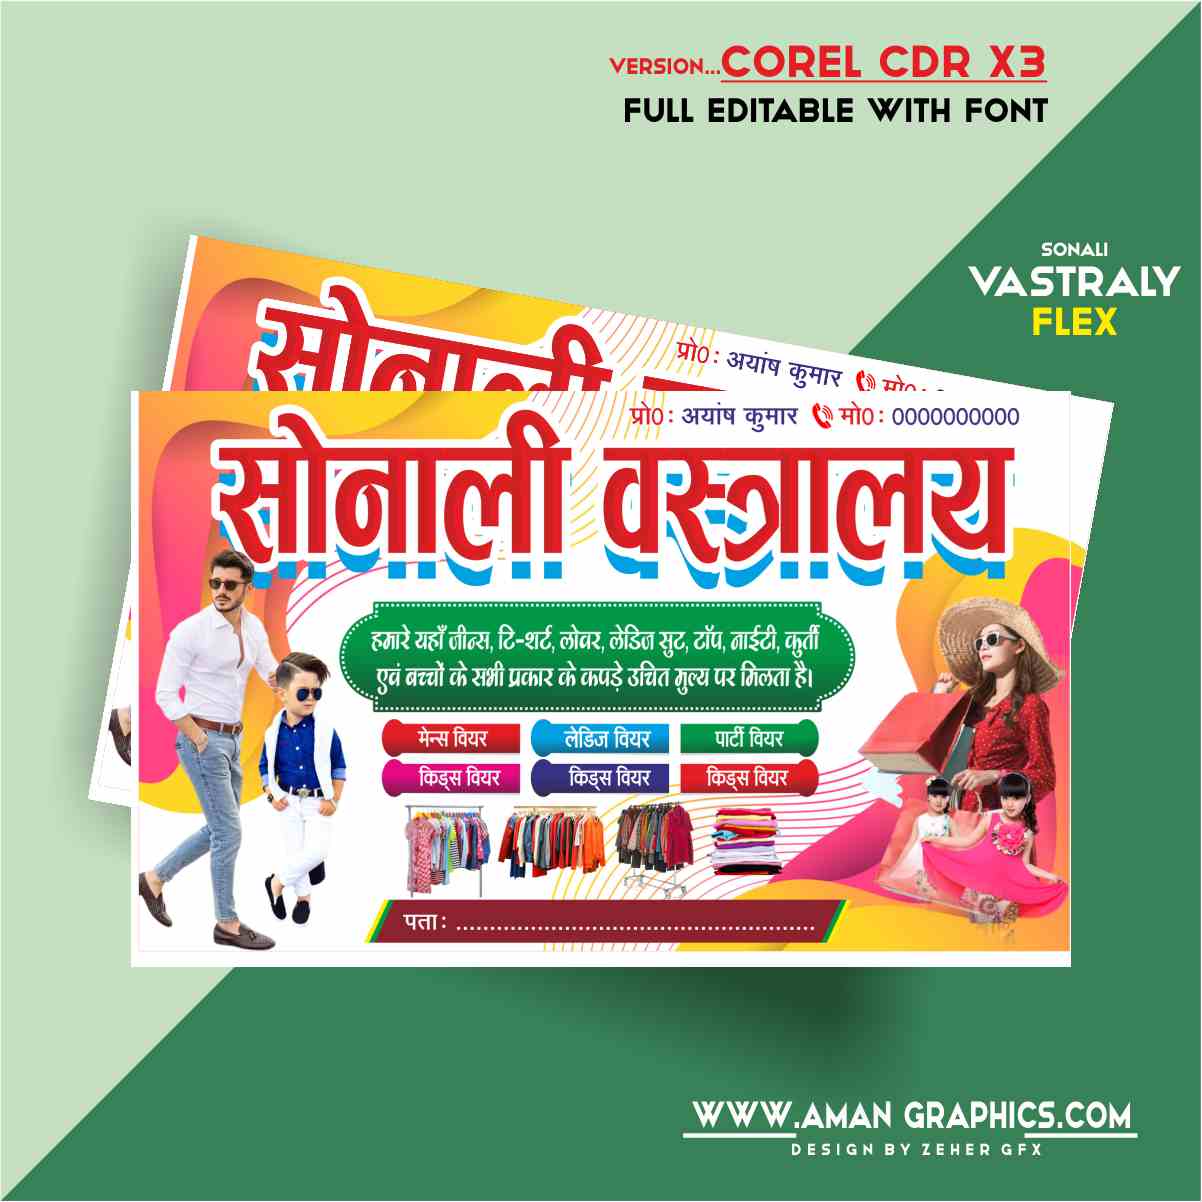 Sonali Vastraly Banner Design Cdr File